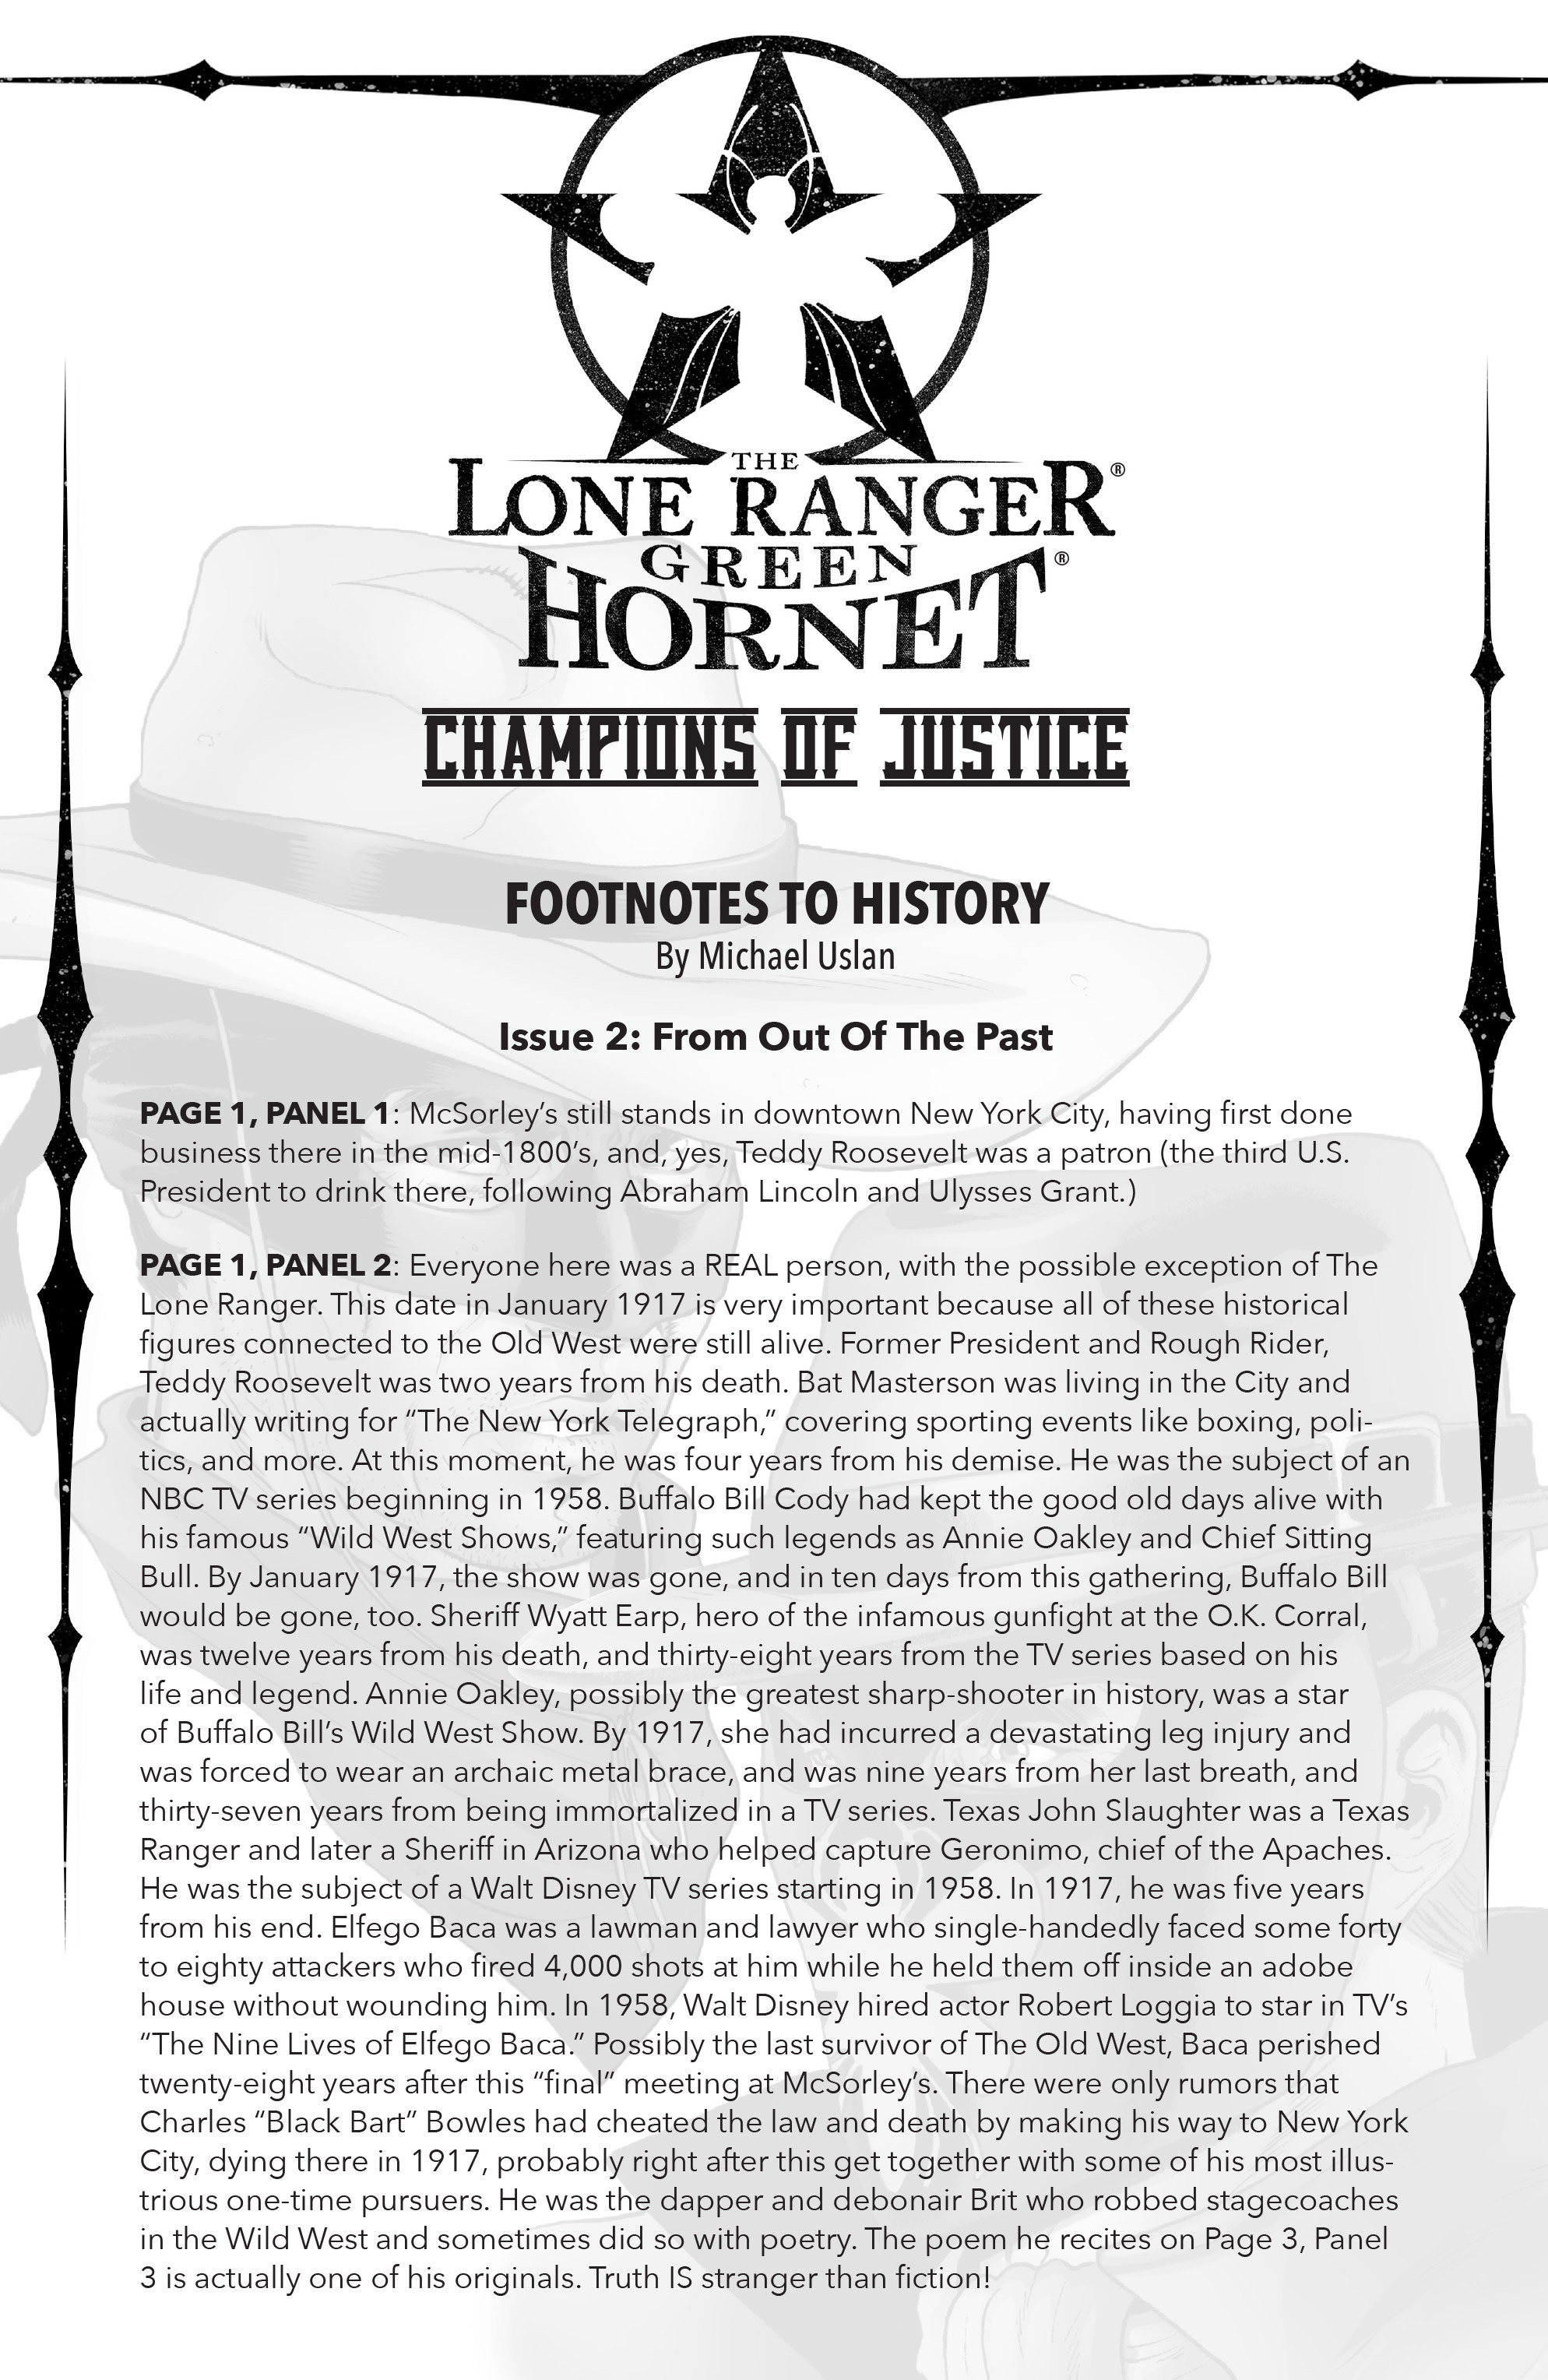 Read online The Lone Ranger/Green Hornet comic -  Issue #2 - 25